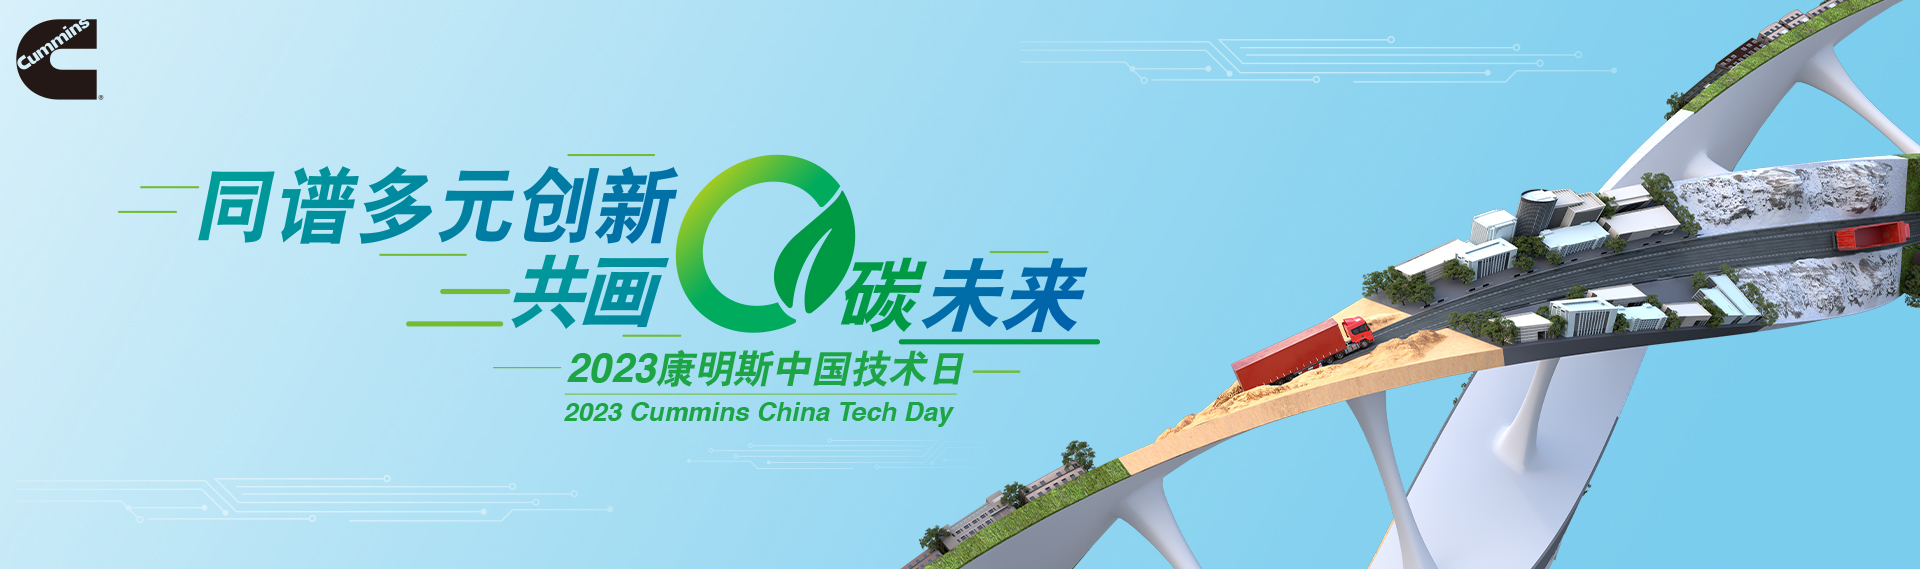 2023康明斯中国技术日